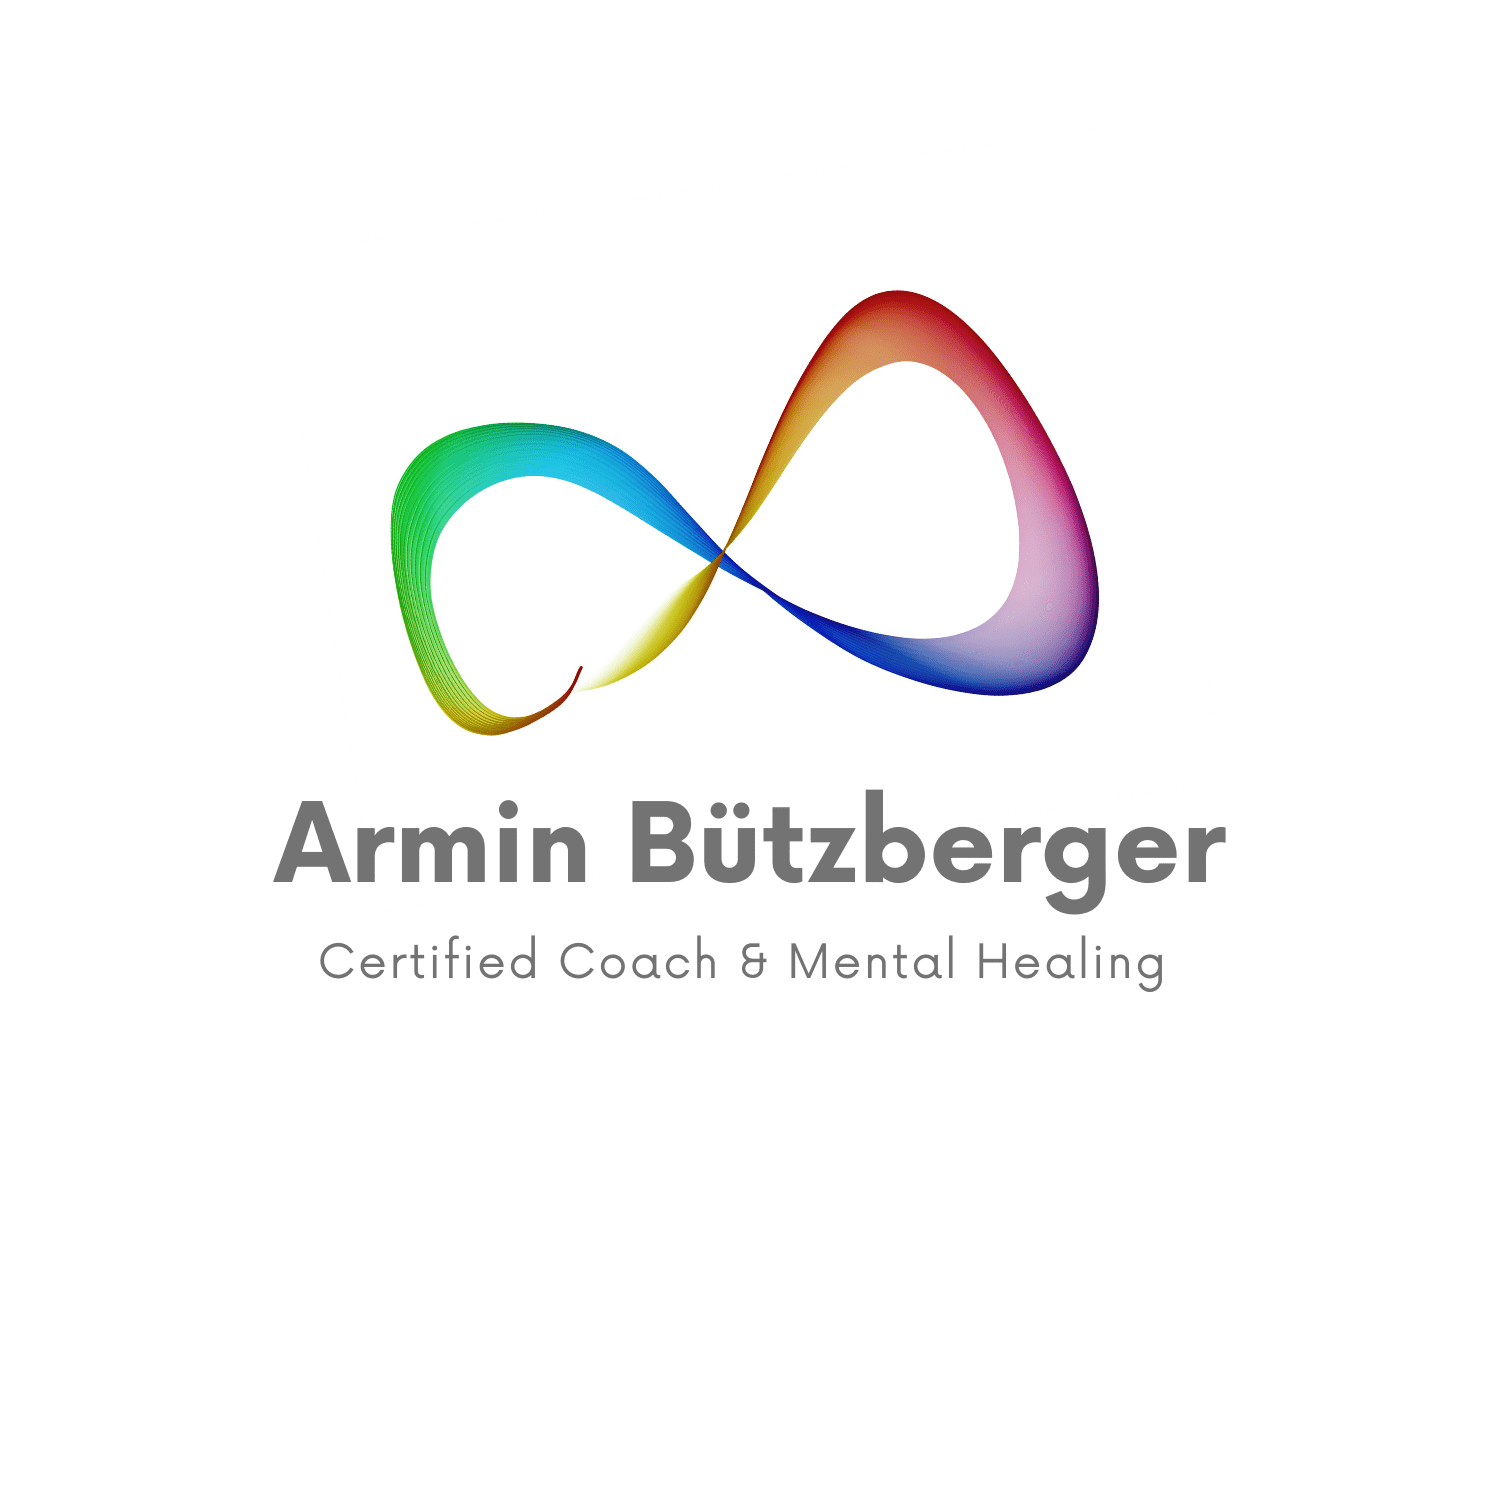 Armin Bützberger - Gesundheitscoaching, Erfolgscoaching & Lebenscoaching in der Schweiz